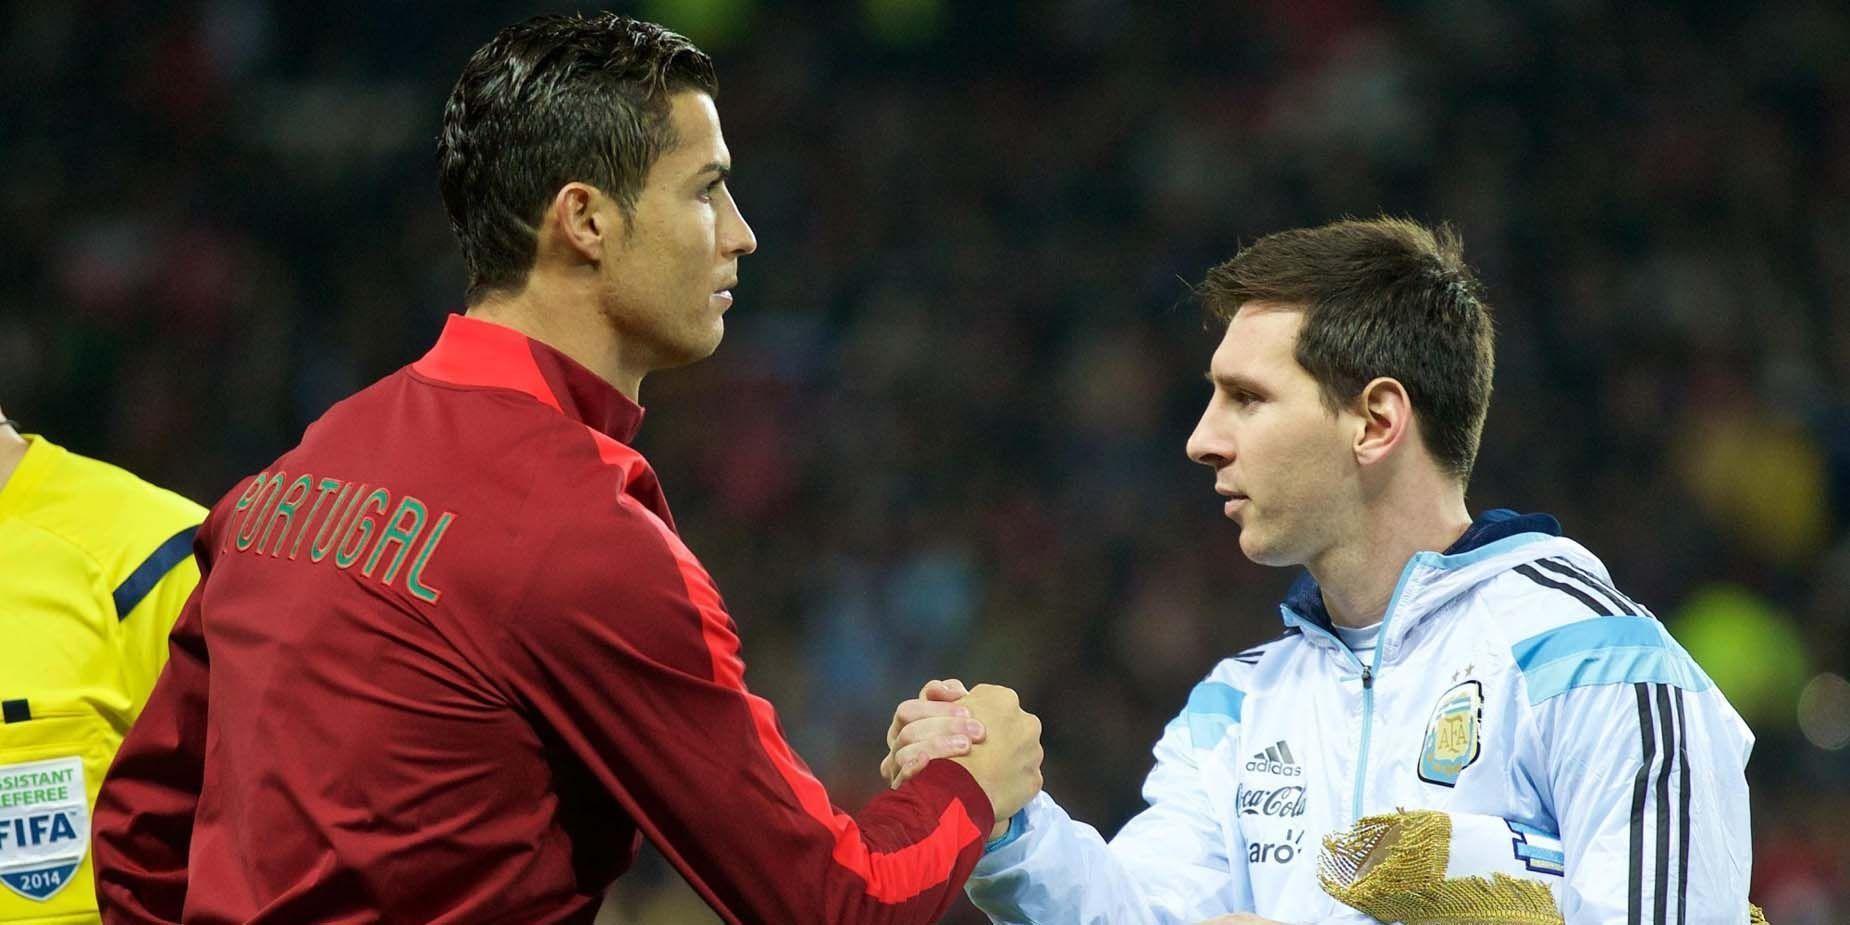 So sánh giữa Ronaldo và Messi là câu chuyện về hai ngôi sao bóng đá vĩ đại. Điều này sẽ khiến bạn bị cuốn hút và xem họ vượt qua nhau từng giây trên sân cỏ. Bức tranh này đích thực là một sự so sánh đáng xem.